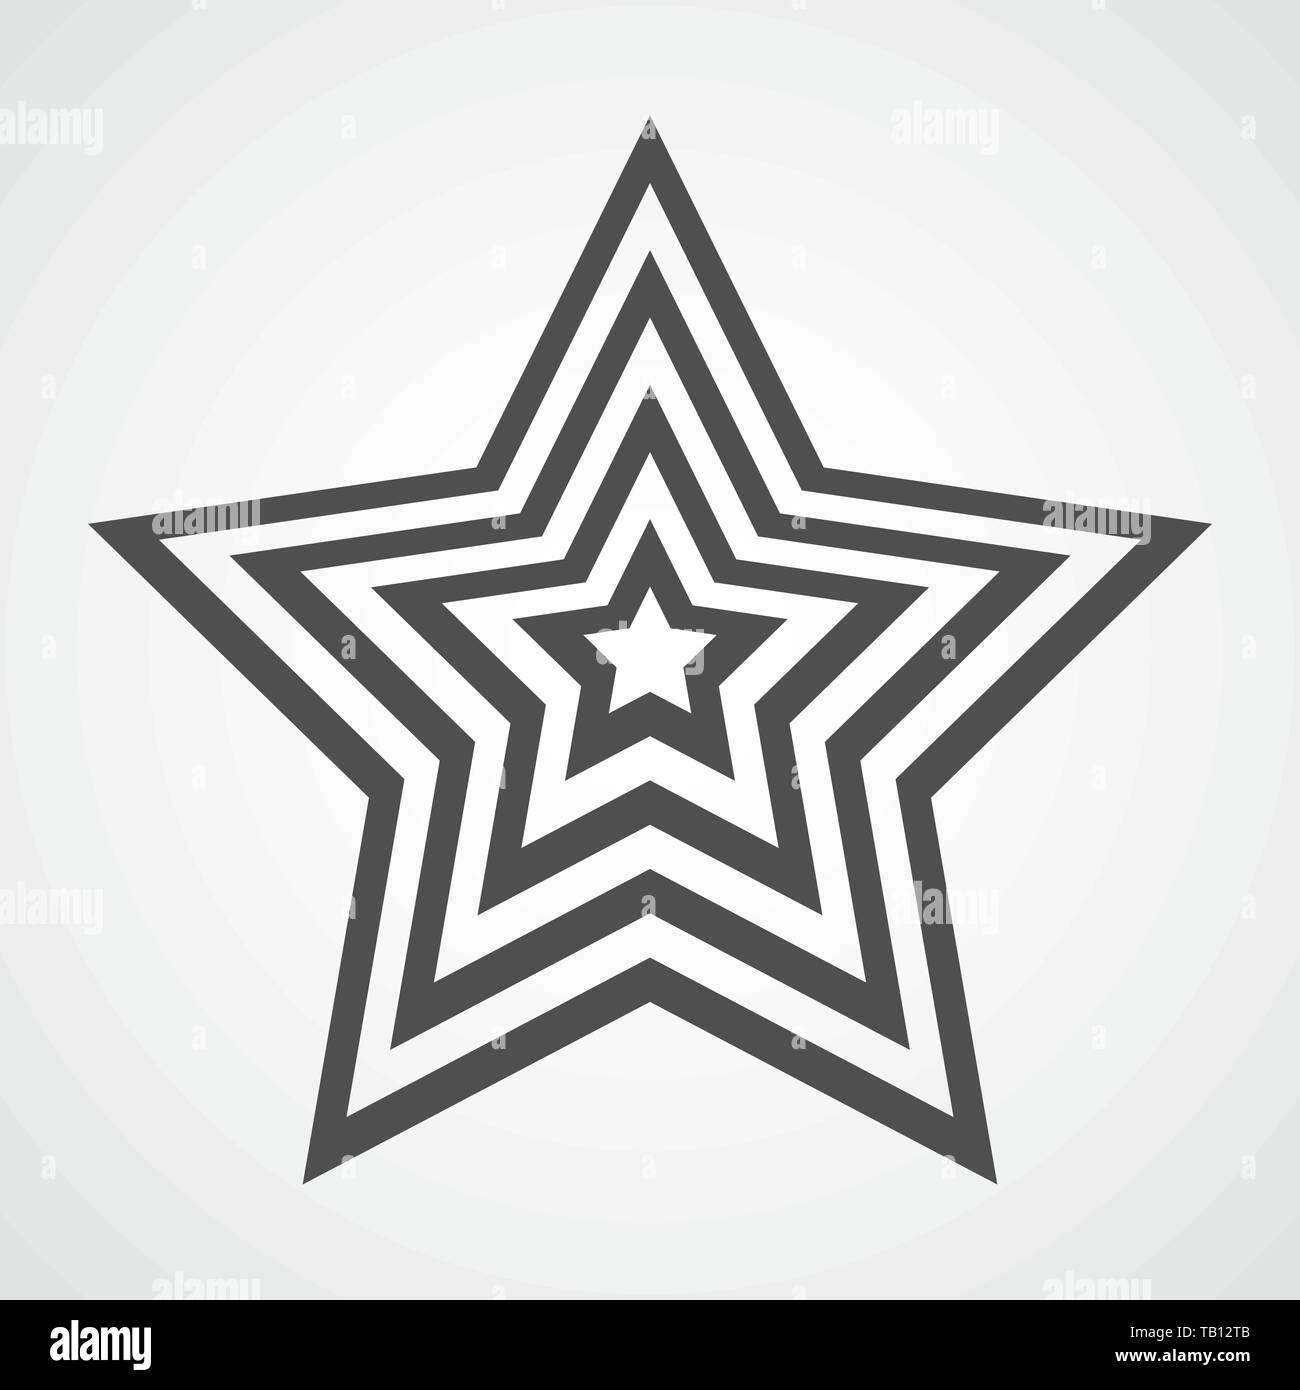 Icône en forme d'étoile modèle plat. L'icône star gris sur fond clair. Vector illustration. Illustration de Vecteur